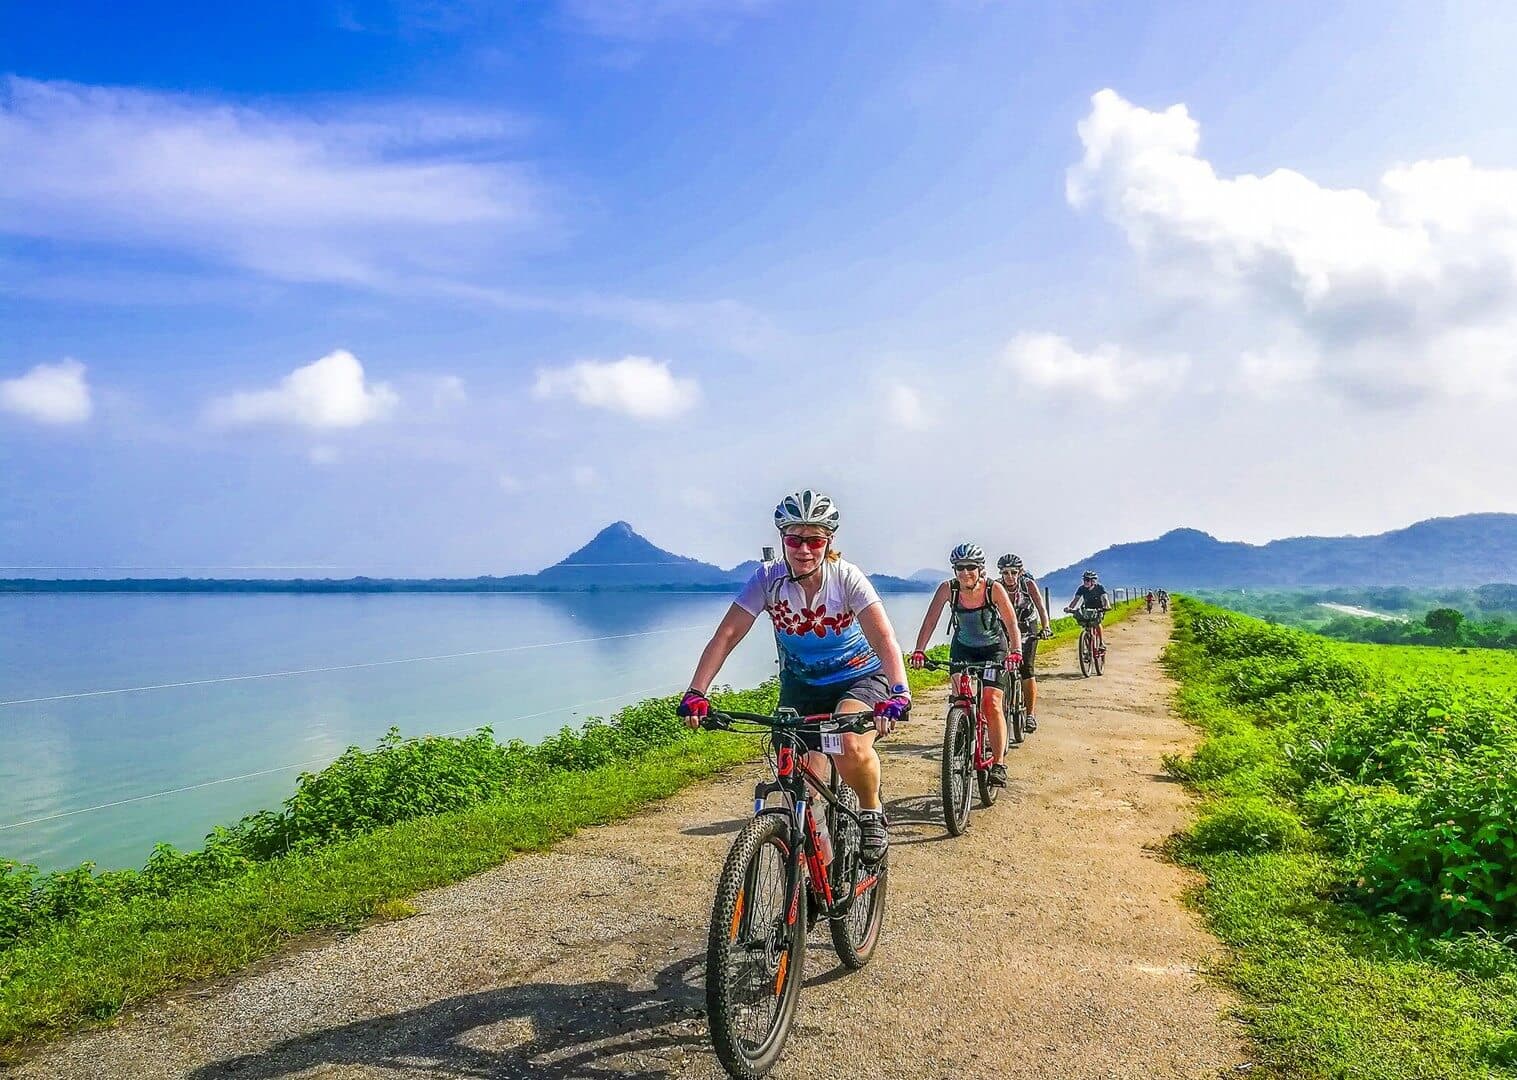 在 Ella 到 Yala 之旅中欣赏湖畔自行车骑行的美丽自然景观